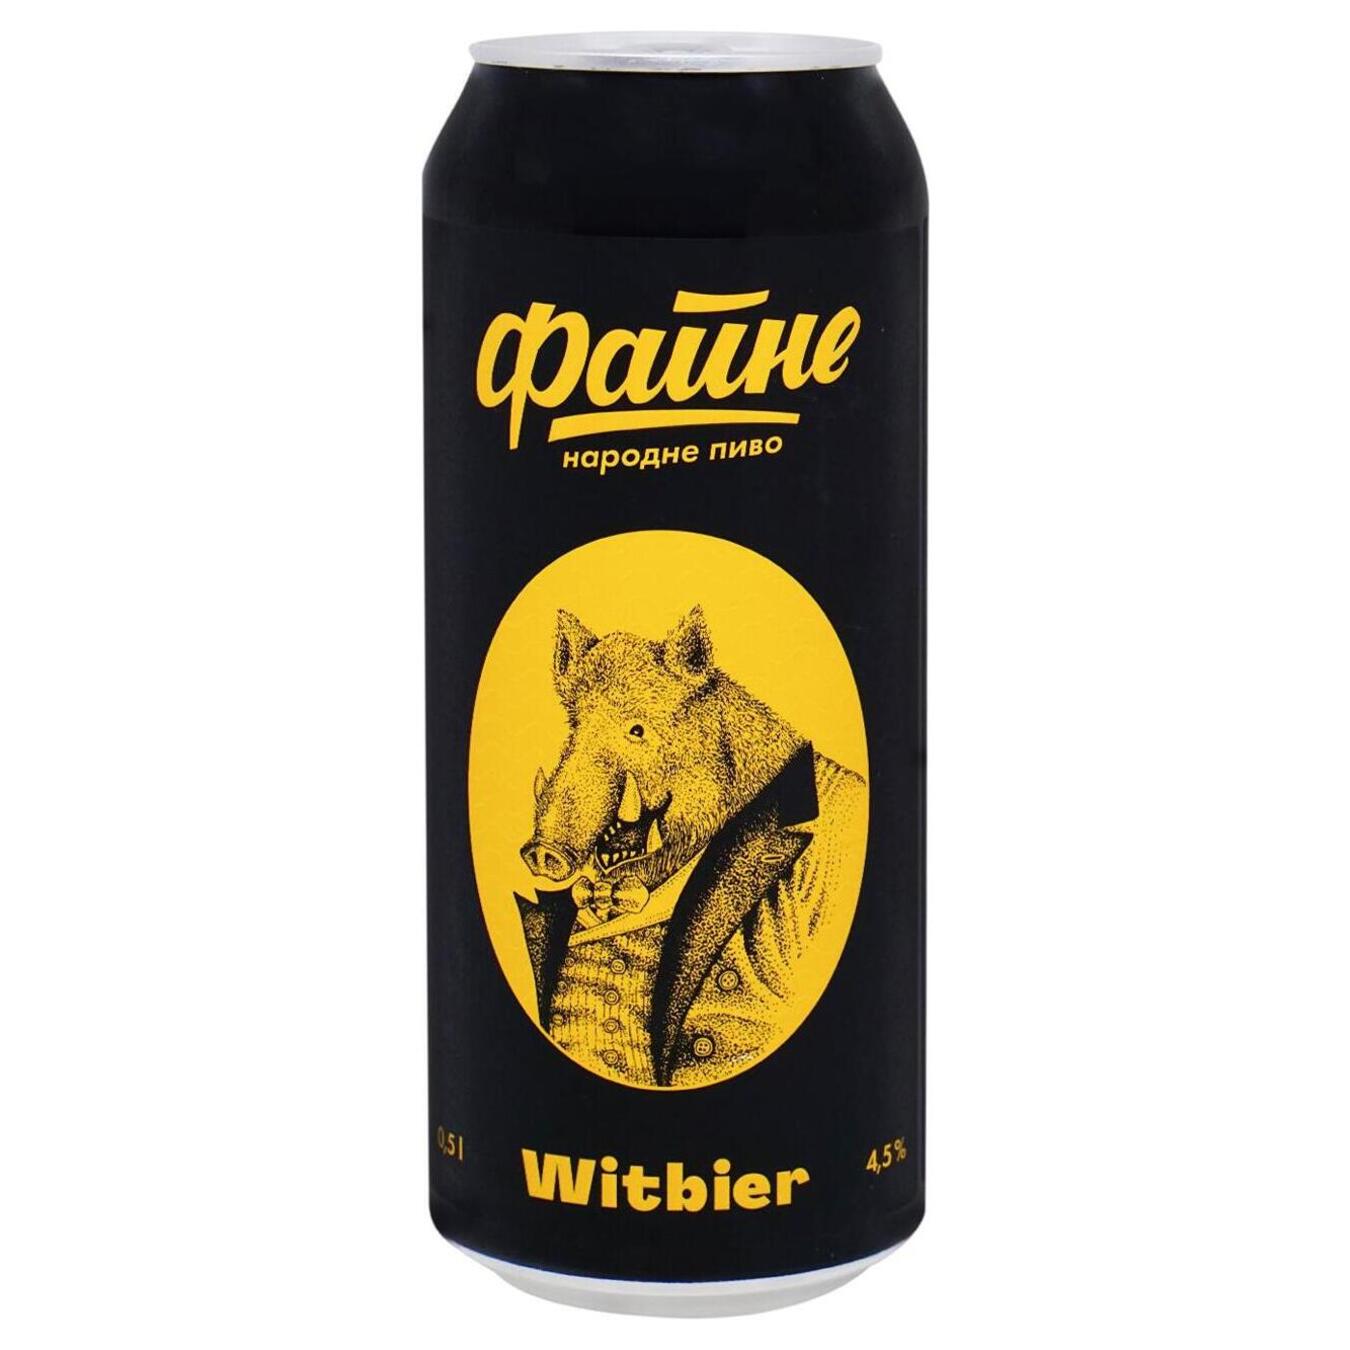 Пиво Файне Witbier светлое 4,5% 0,5л